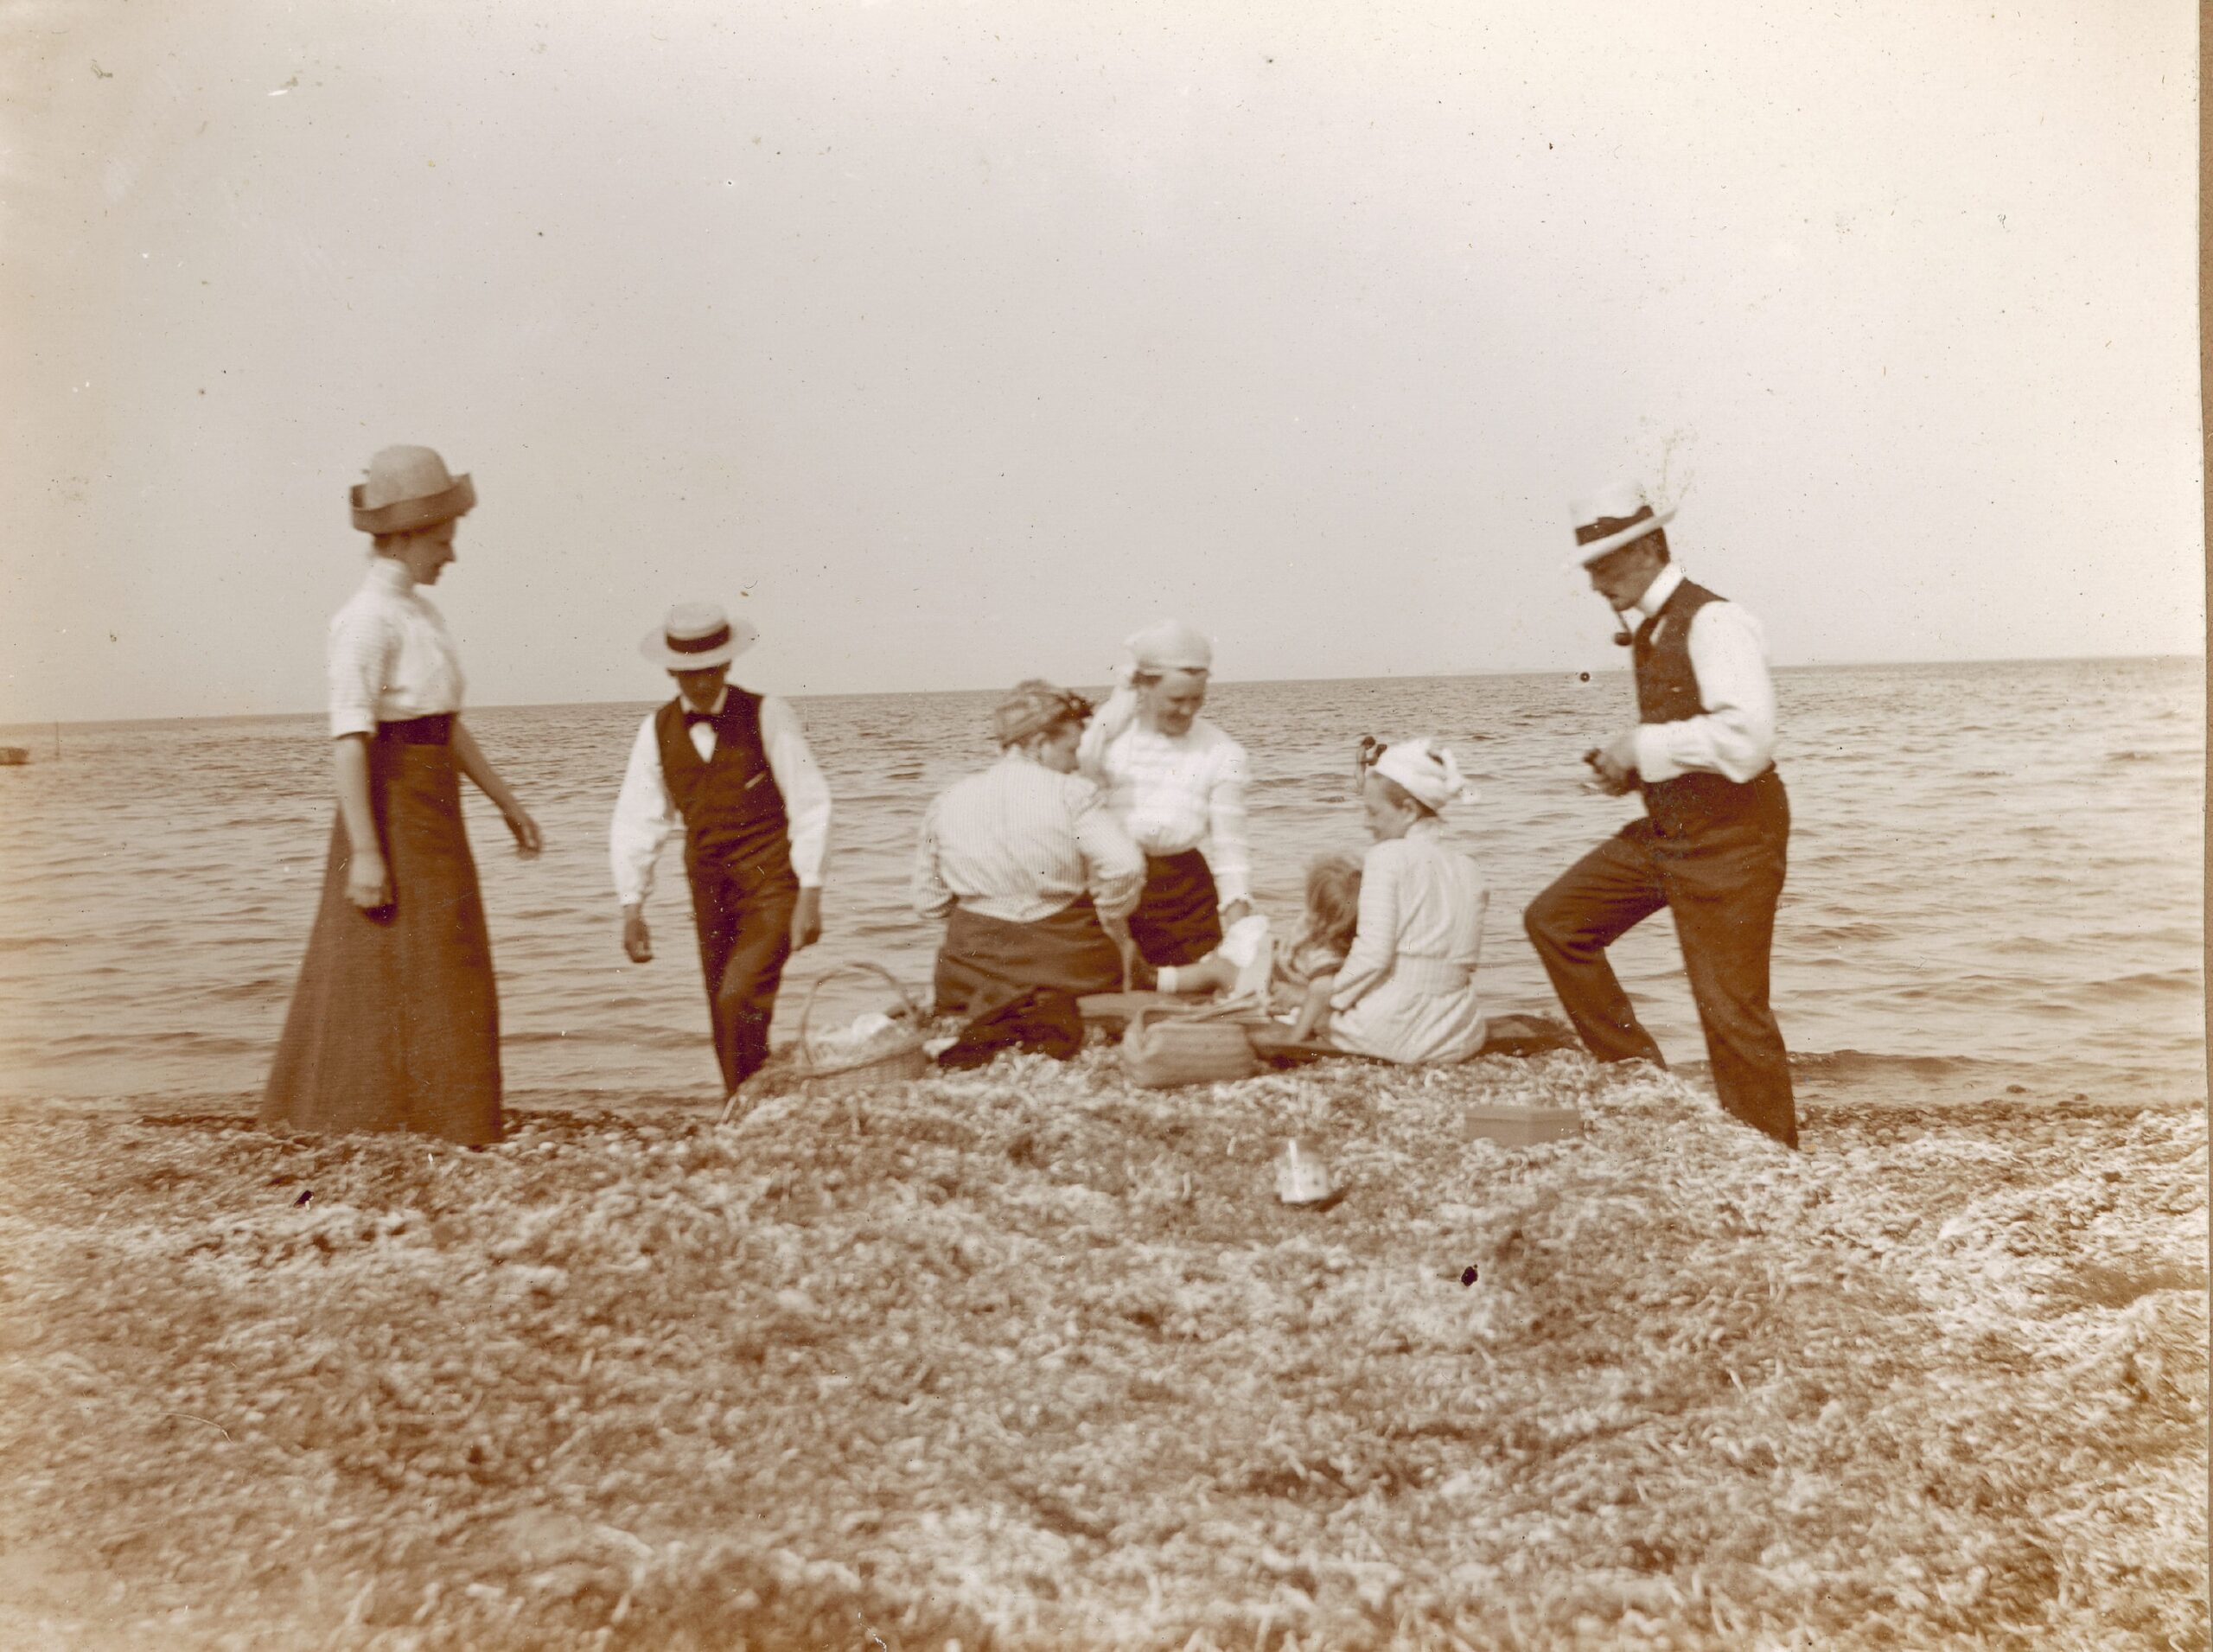 Købmand Kingo Petersen fra Odense med familien på udflugt stranden ved Hasmark i 1912. Fra familien Kingo Petersens fotoalbum // Odense Bys Museer